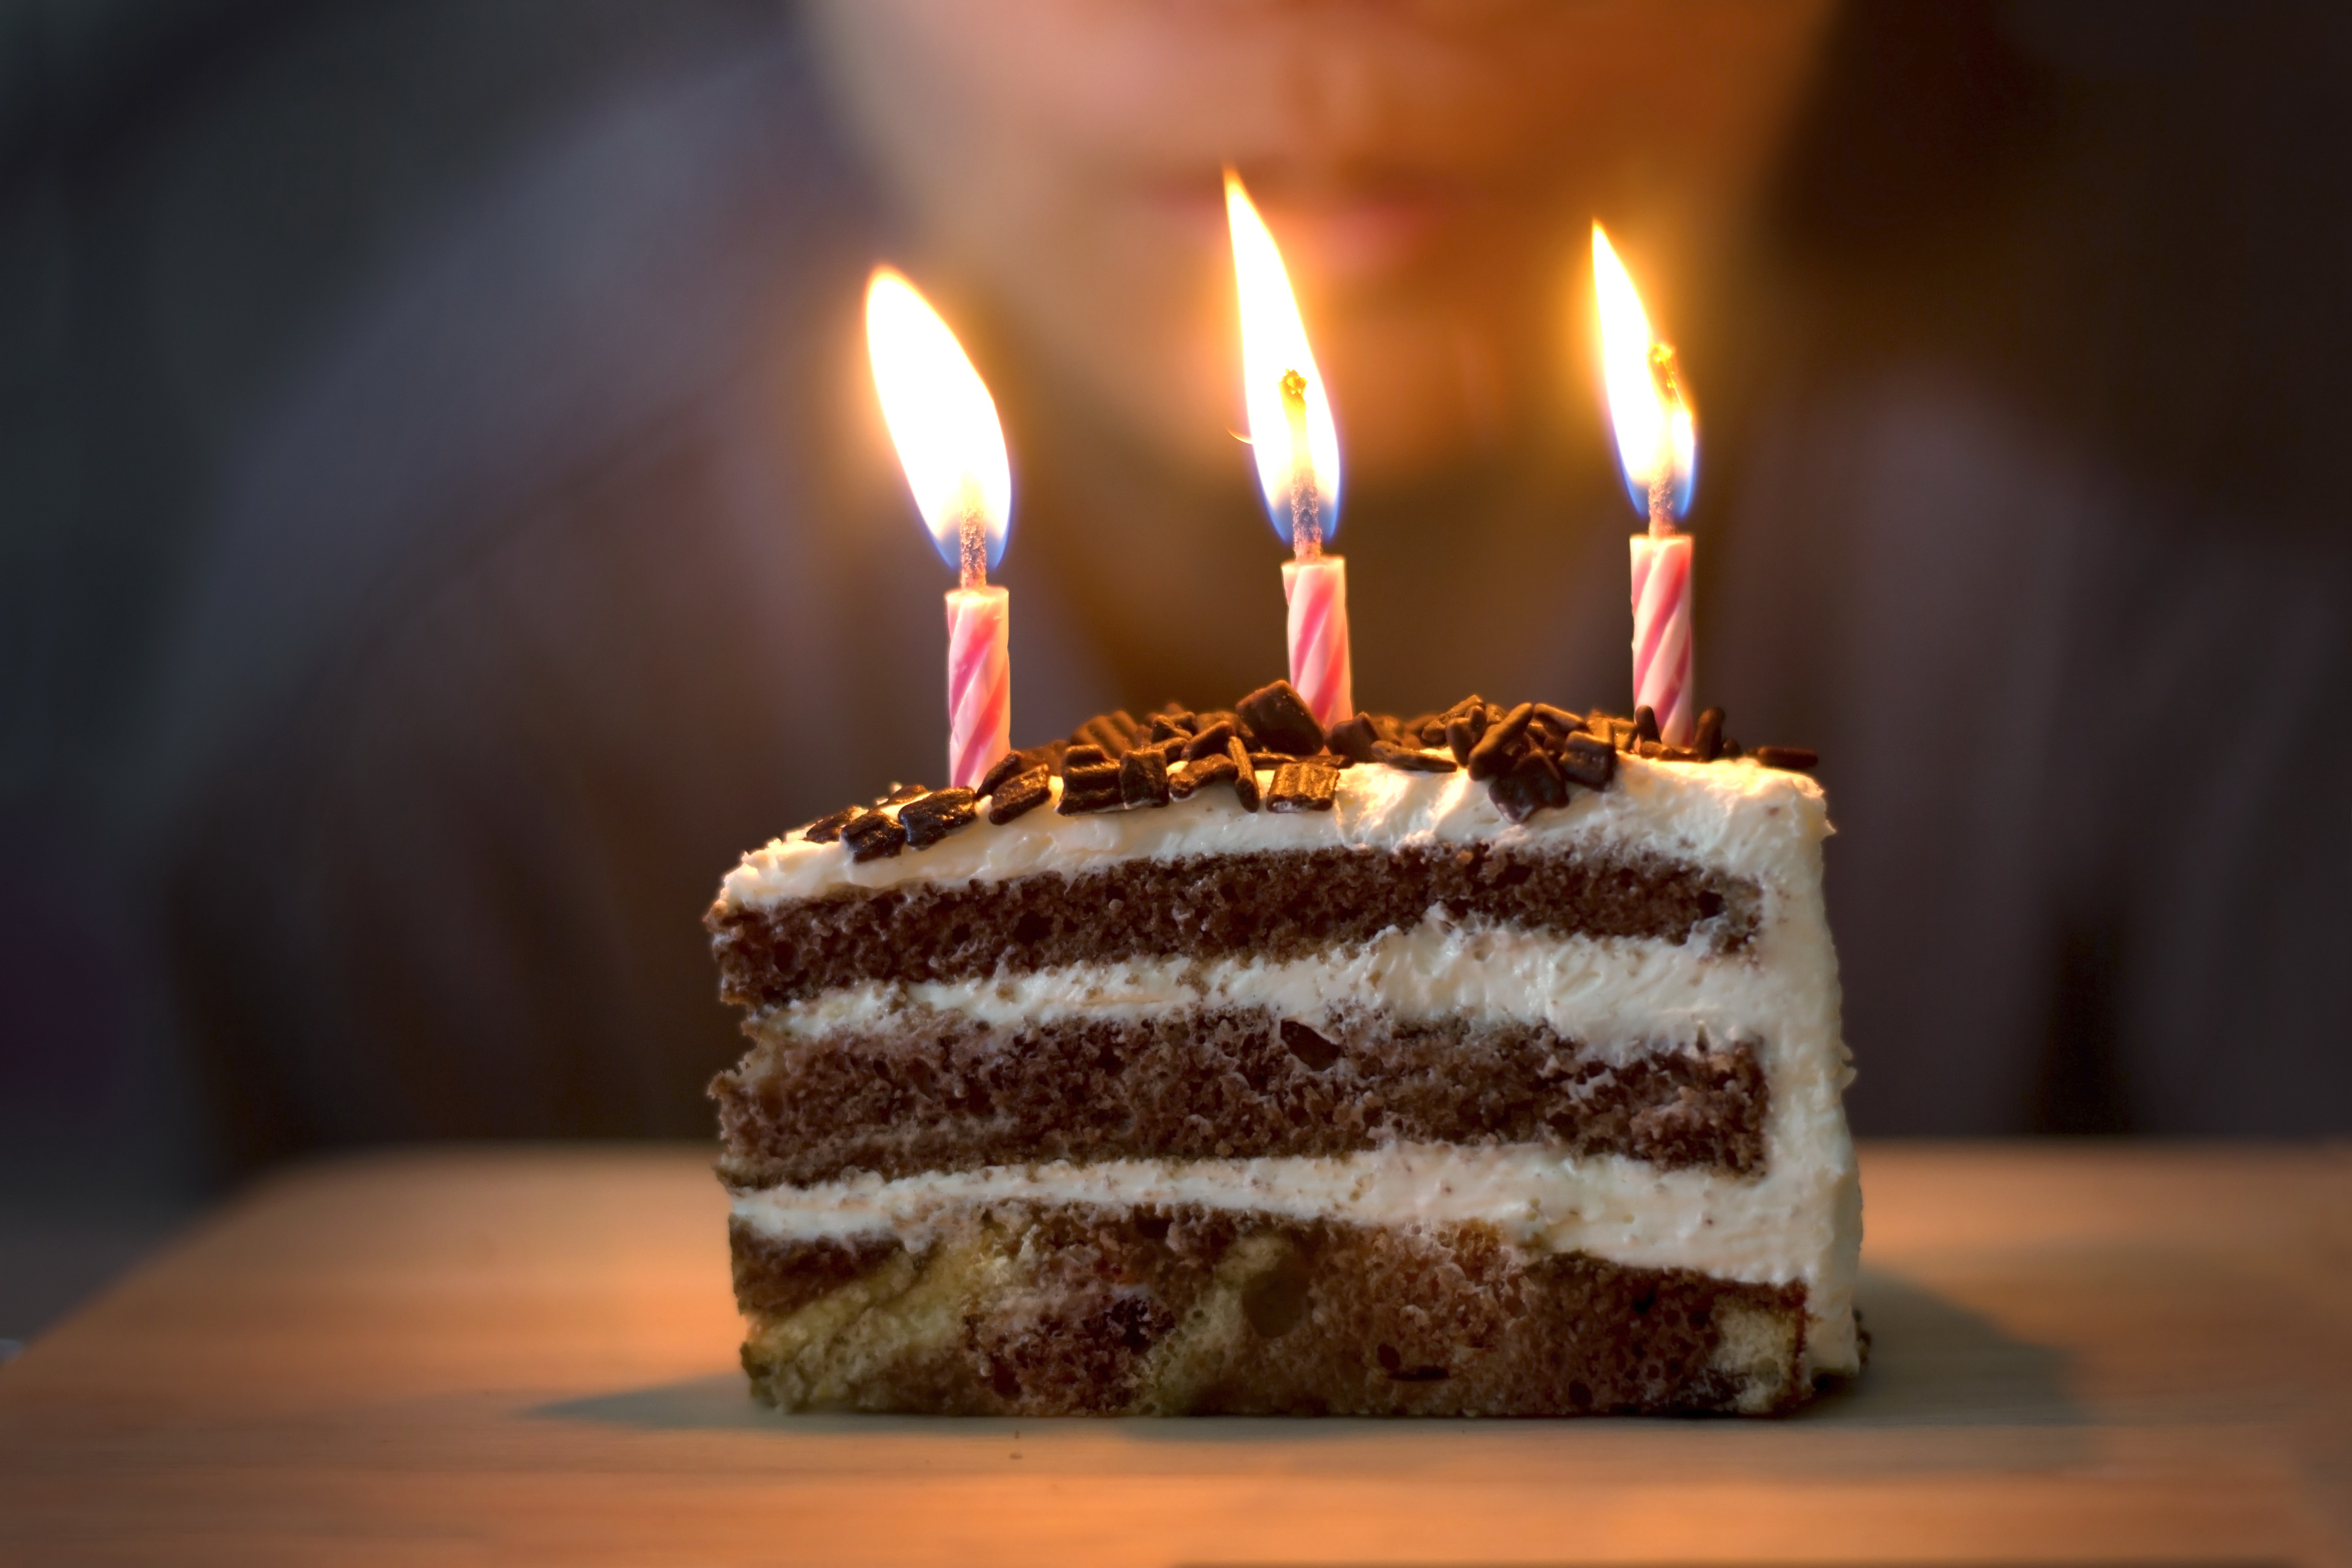 Cake candle. Свечи для торта. Тортик со свечками. Кусок торта со свечкой. Тортик с тремя свечками.